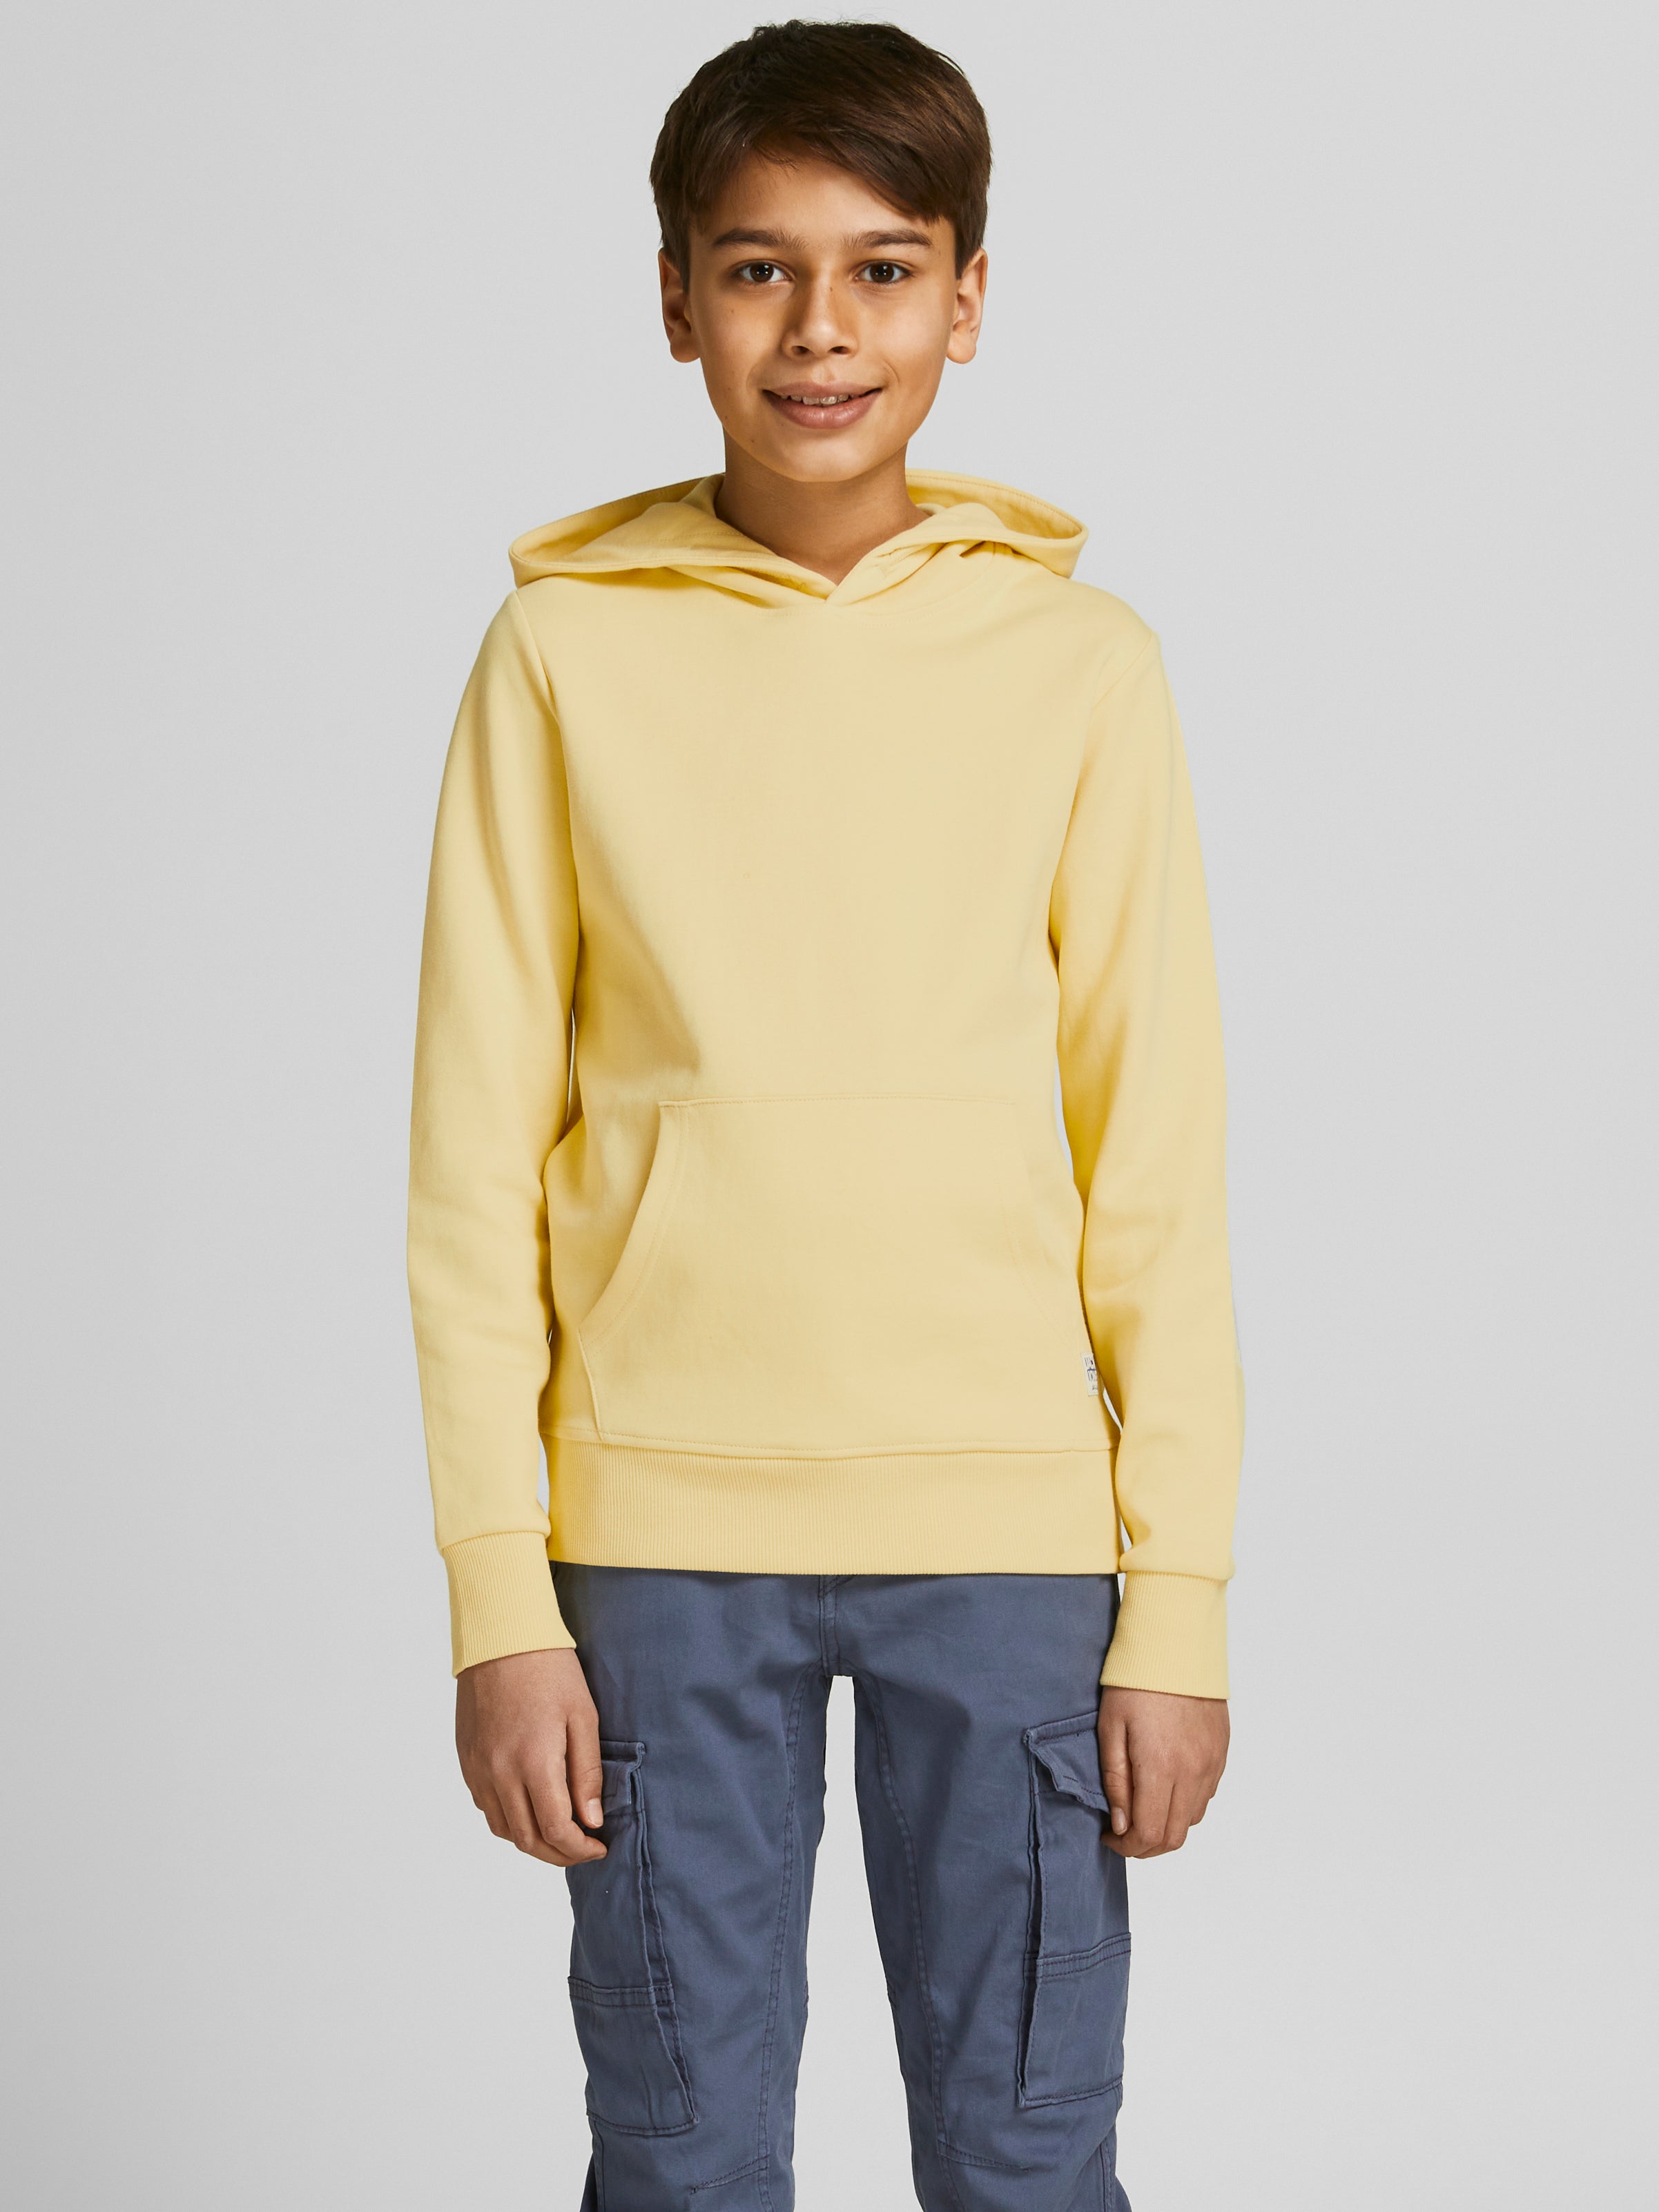 Kleding Jongenskleding Babykleding voor jongens Hoodies & Sweatshirts Mercedes Benz Gildan Hoodie Pullover Sweatshirt Pullover 